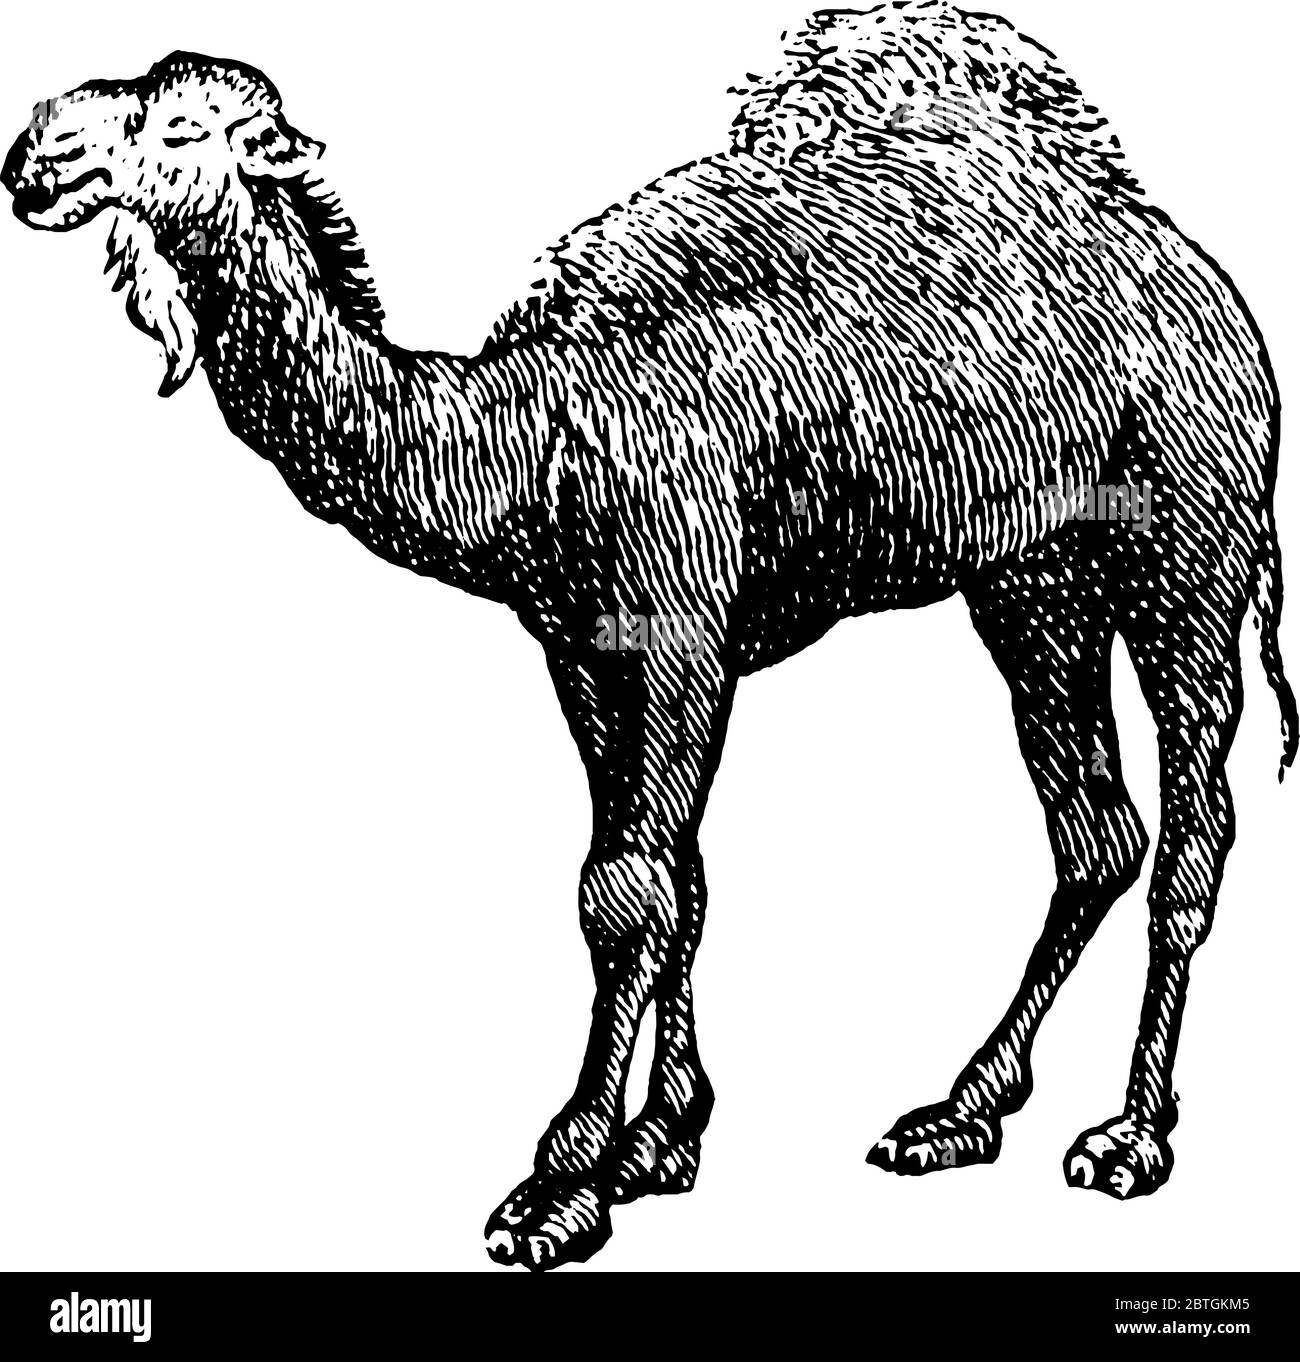 Kamel ist ein großes Tier in Wüsten gefunden, Vintage-Linie Zeichnung oder Gravur Illustration. Stock Vektor